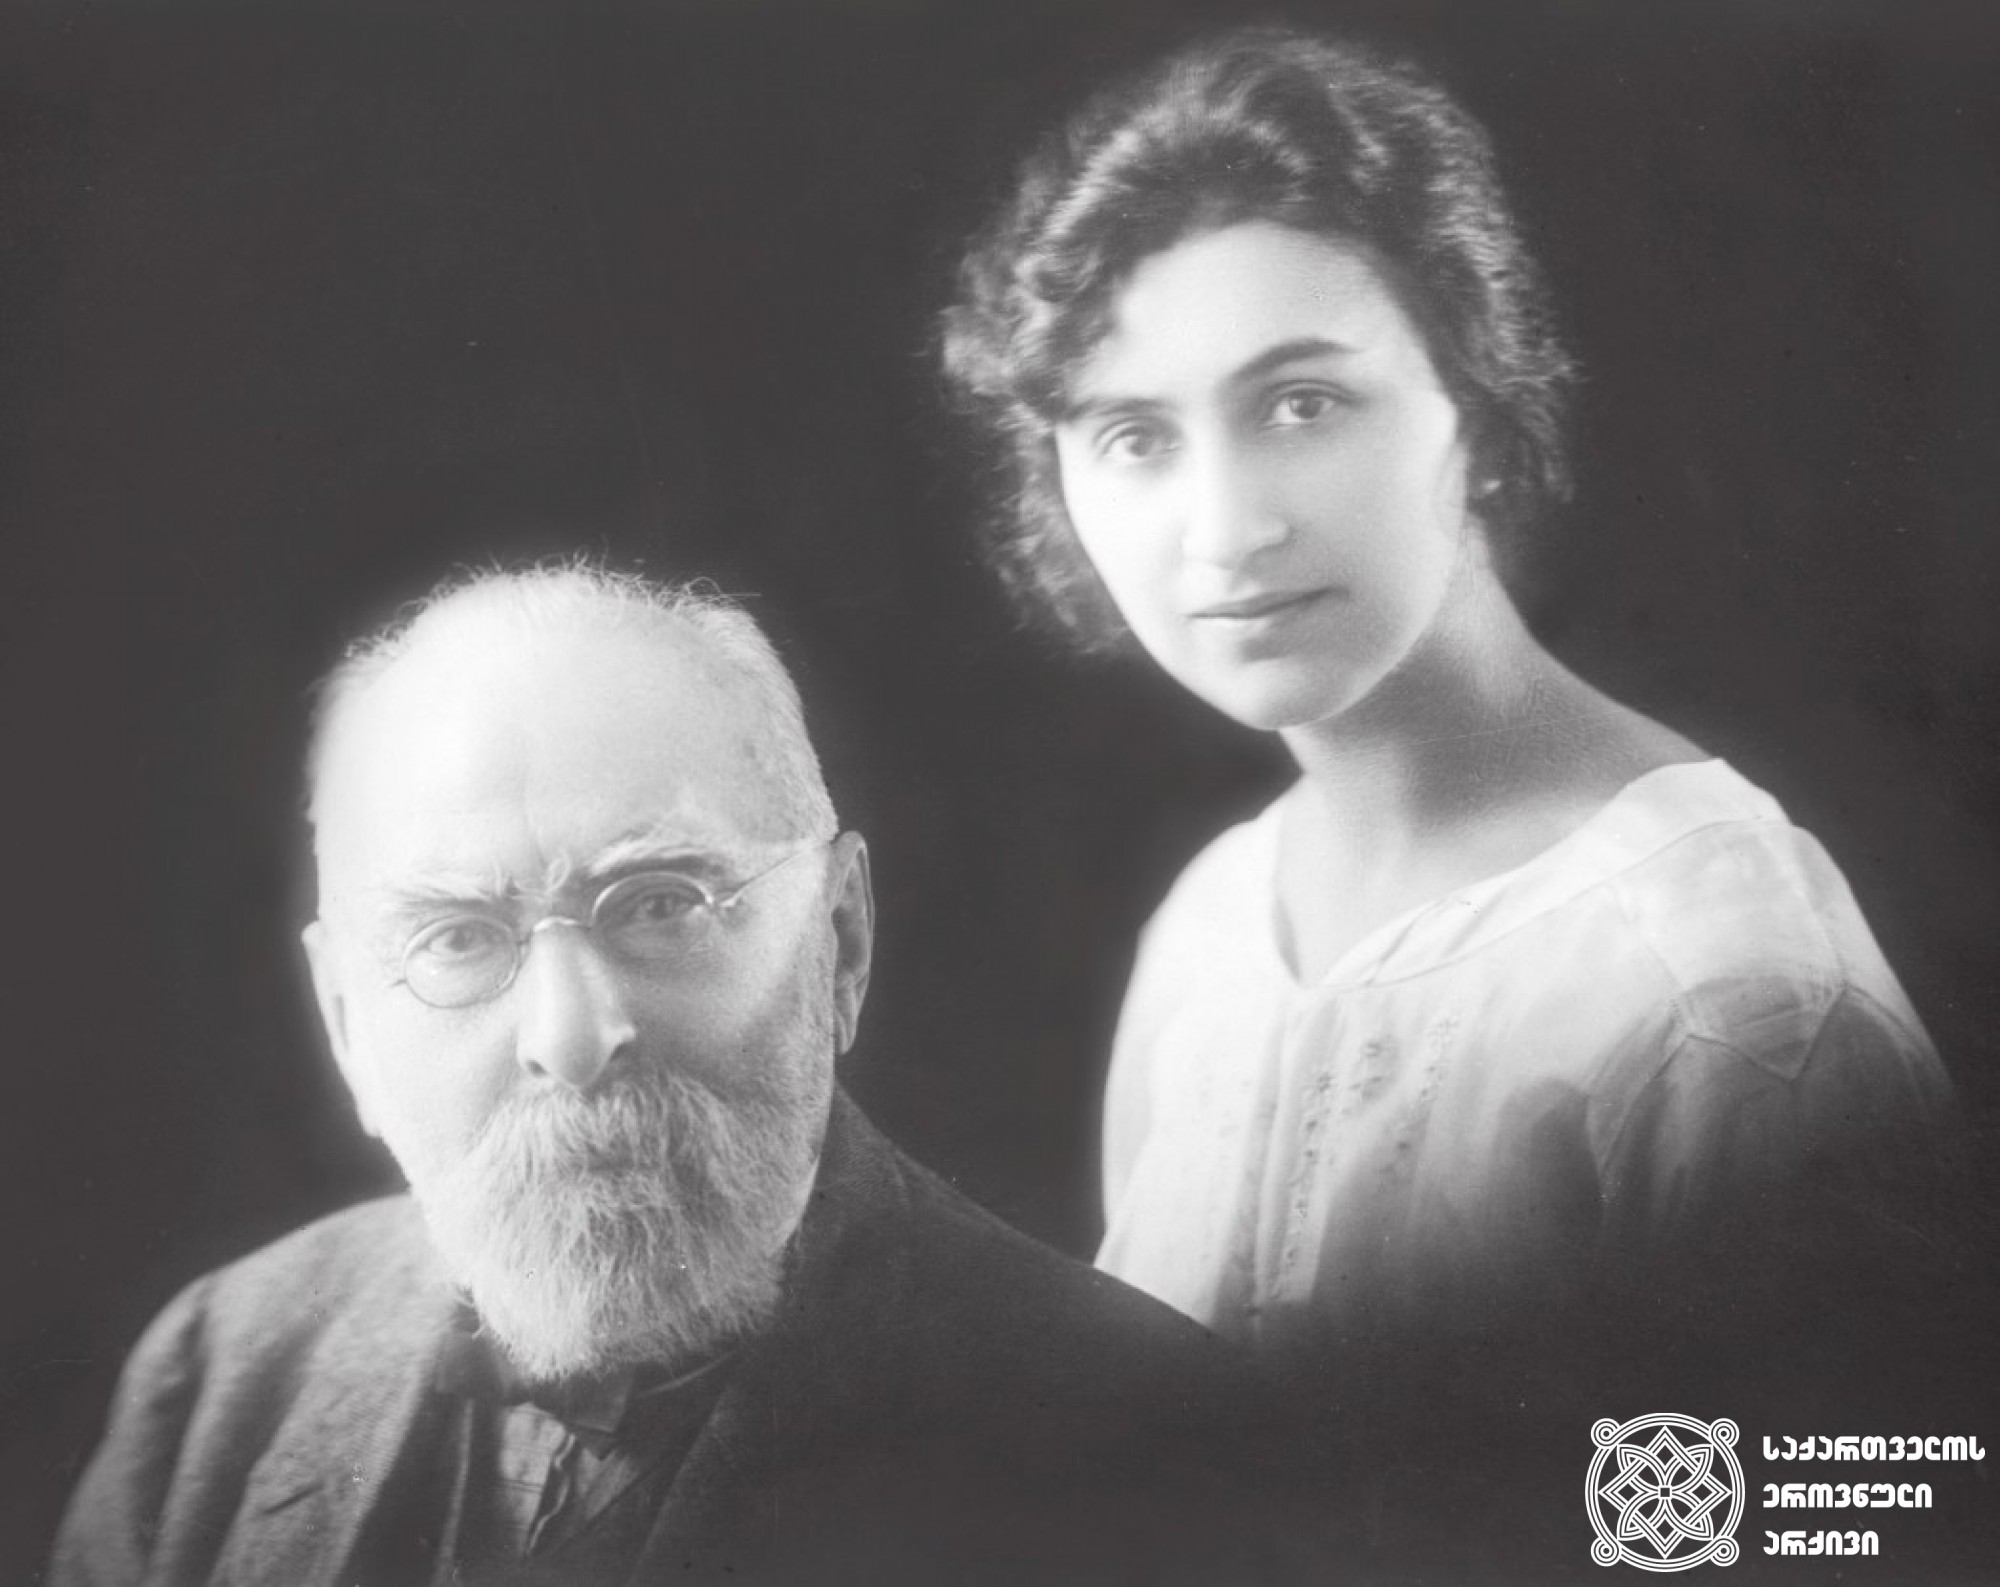 ნიკო ნიკოლაძე თავის ქალიშვილ თამართან ერთად ლონდონში. <br>
1923 წელი. <br>
თამარ ნიკოლაძე (1892-1939) - ფიზიოლოგი. ნიკო ნიკოლაძისა და ოლღა გურამიშვილის შვილი. ერთ-ერთი პირველი ქართველი სპორტსმენი ქალი. სპორტსაზოგადოება „შევარდენის“ წევრი. ნიკო მუსხელიშვილის მეუღლე. <br>
ნიკოლაძე-ღამბაშიძის ფოტოკოლექცია.